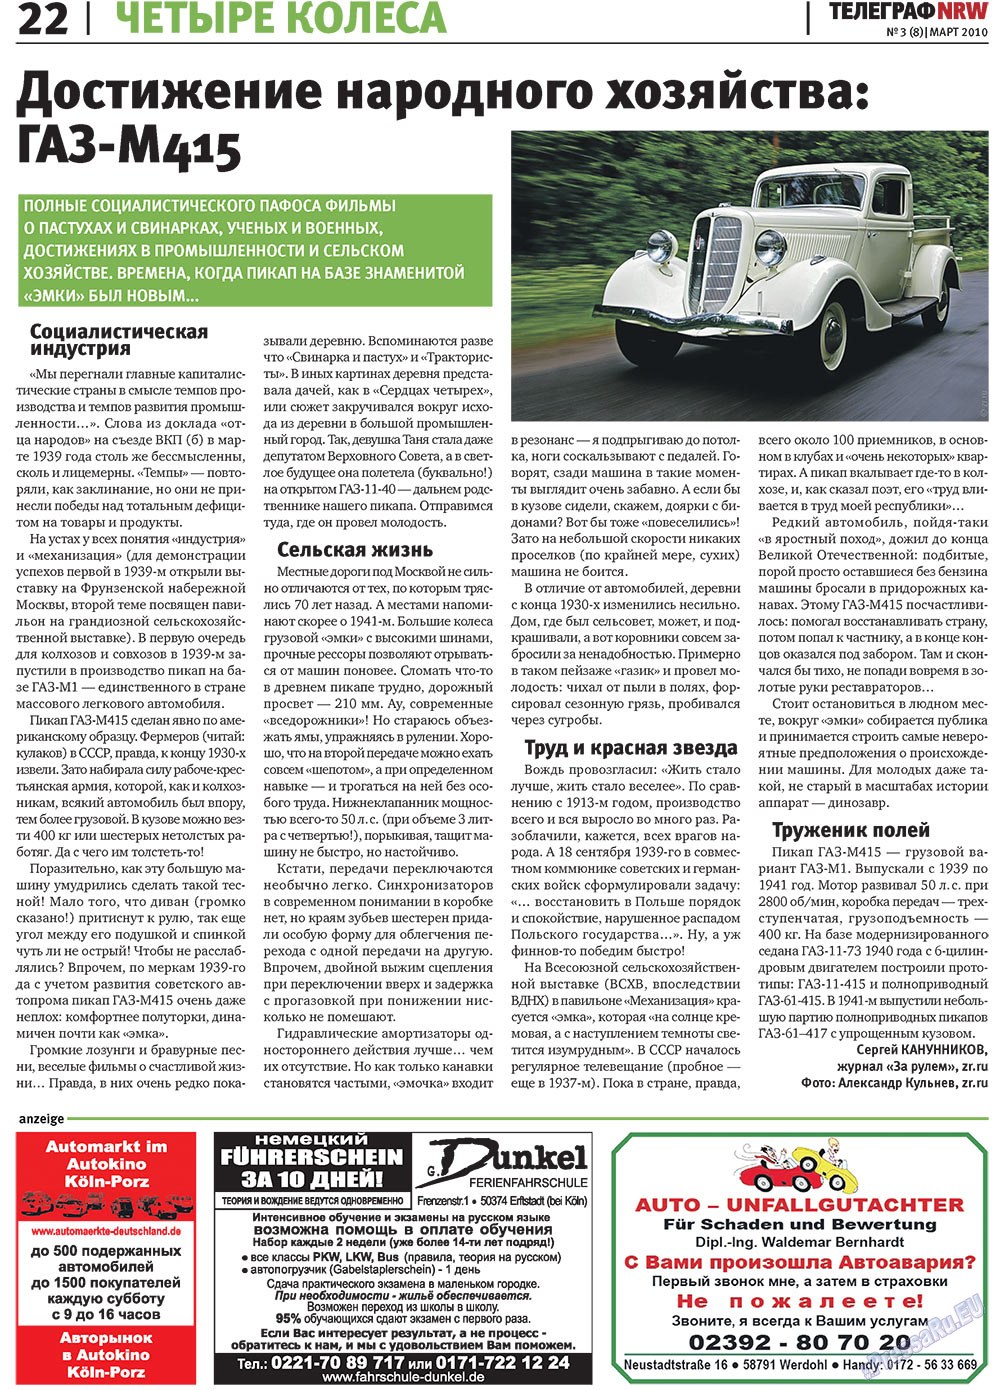 Телеграф NRW (газета). 2010 год, номер 3, стр. 22